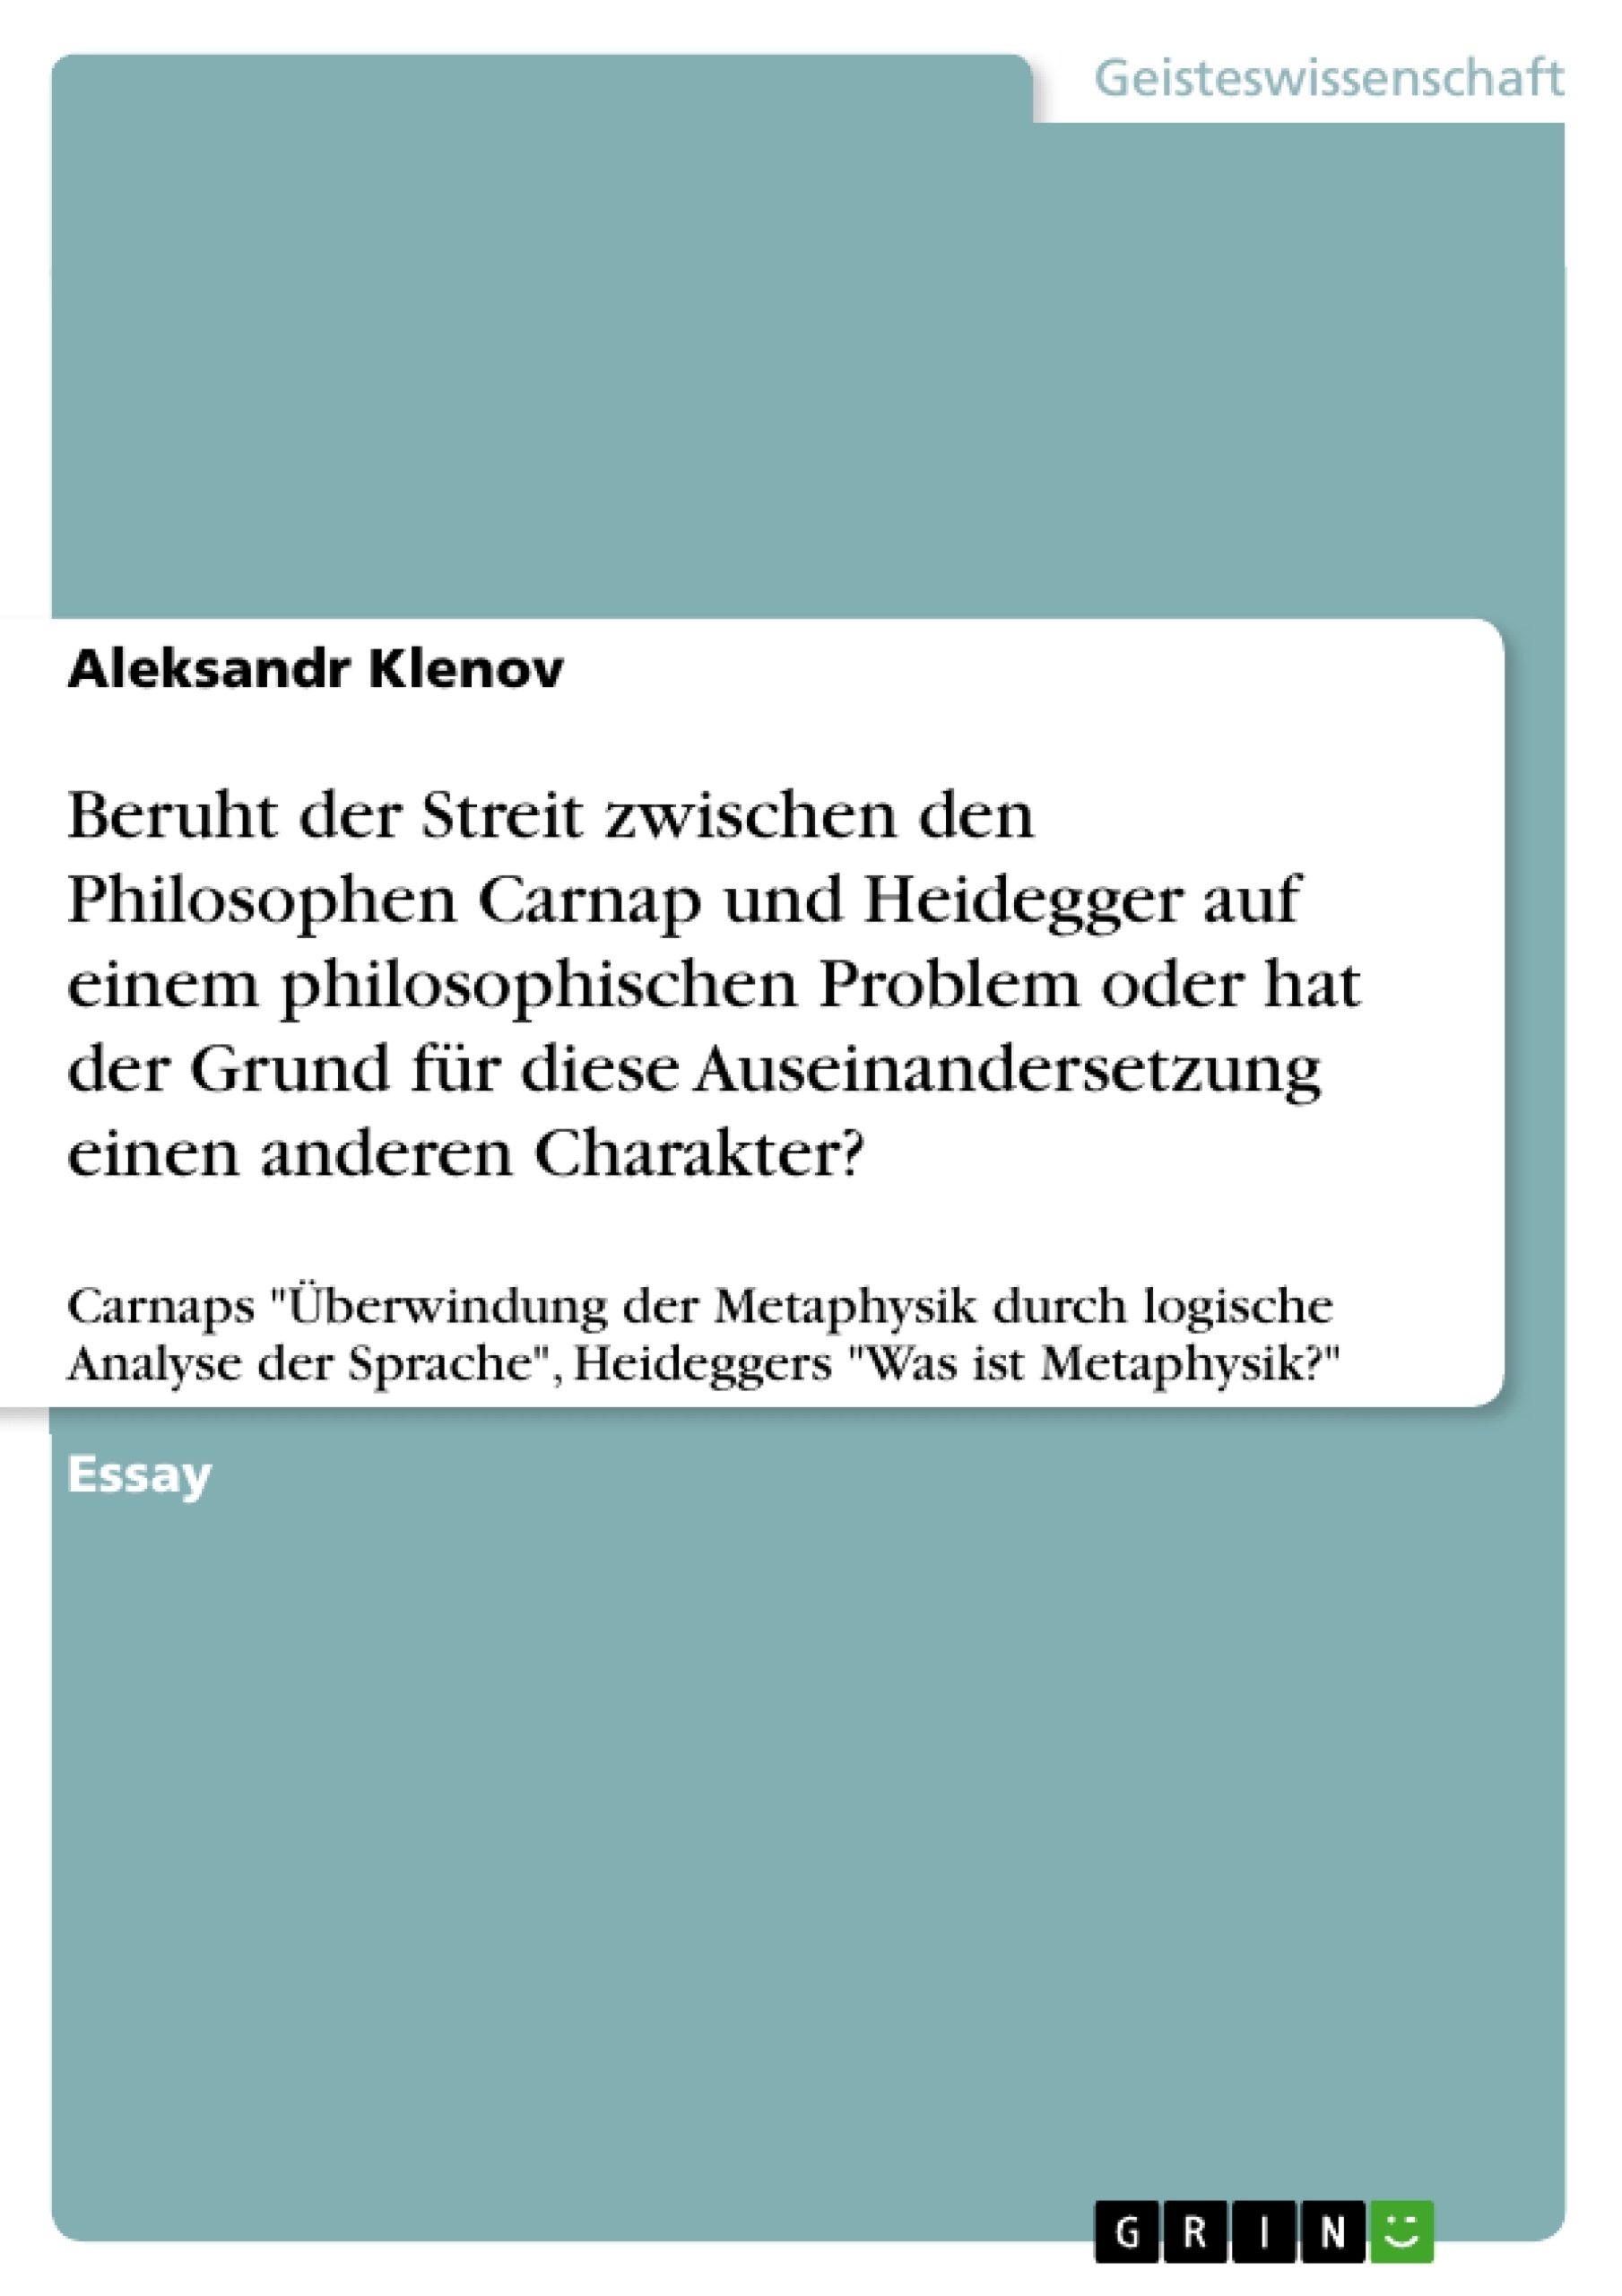 Titre: Beruht der Streit zwischen den Philosophen Carnap und Heidegger auf einem philosophischen Problem oder hat der Grund für diese Auseinandersetzung einen anderen Charakter?